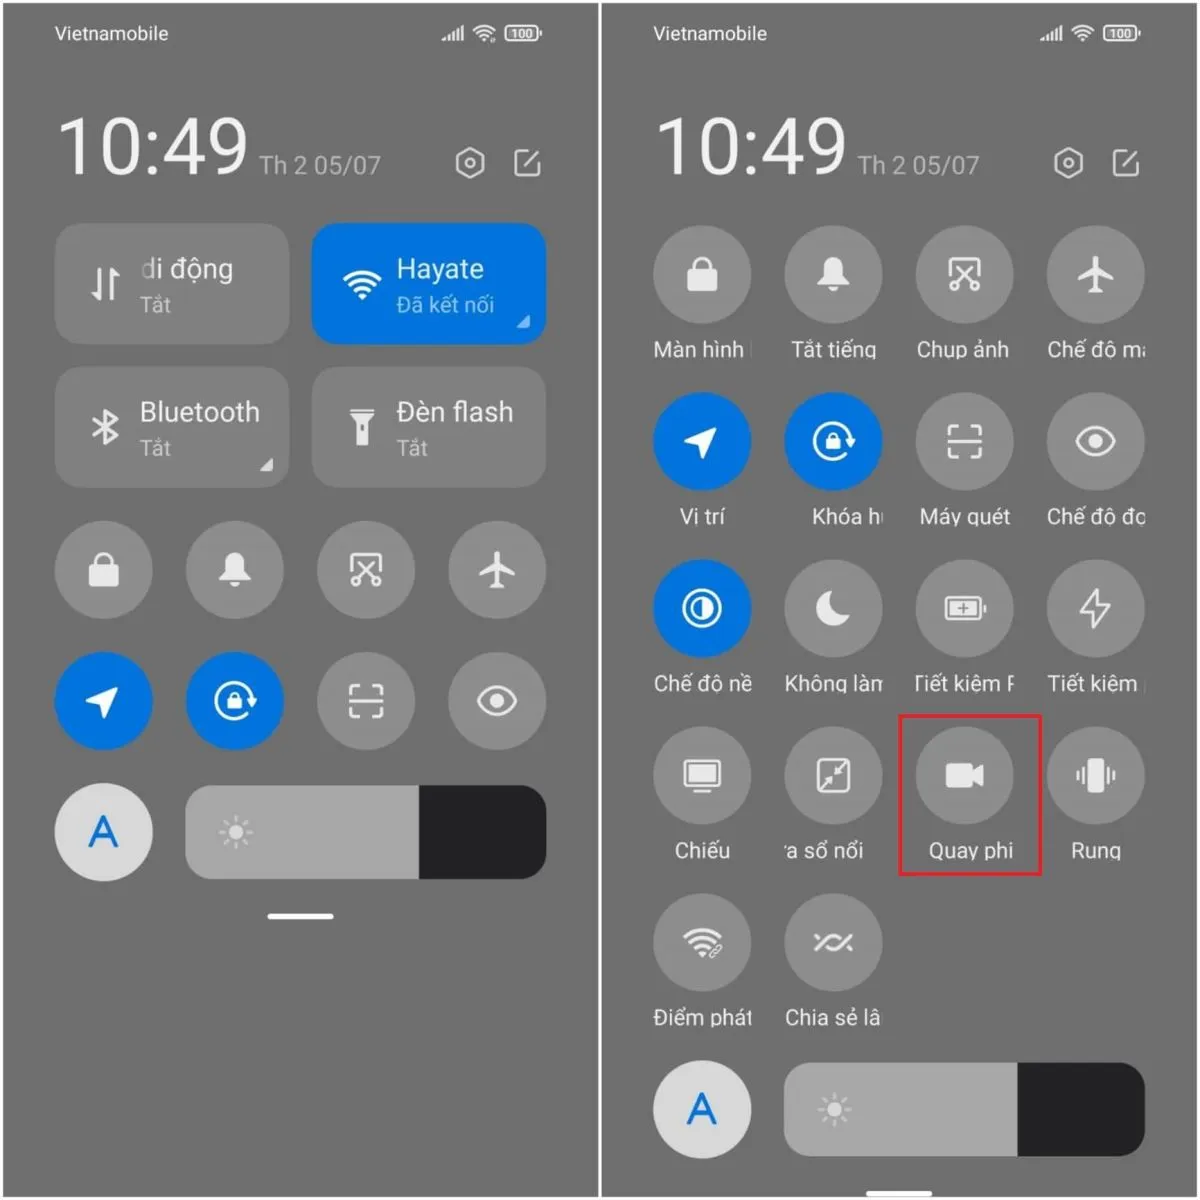 Cách quay màn hình trên iOS, Android cực đơn giản và nhanh chóng (3)